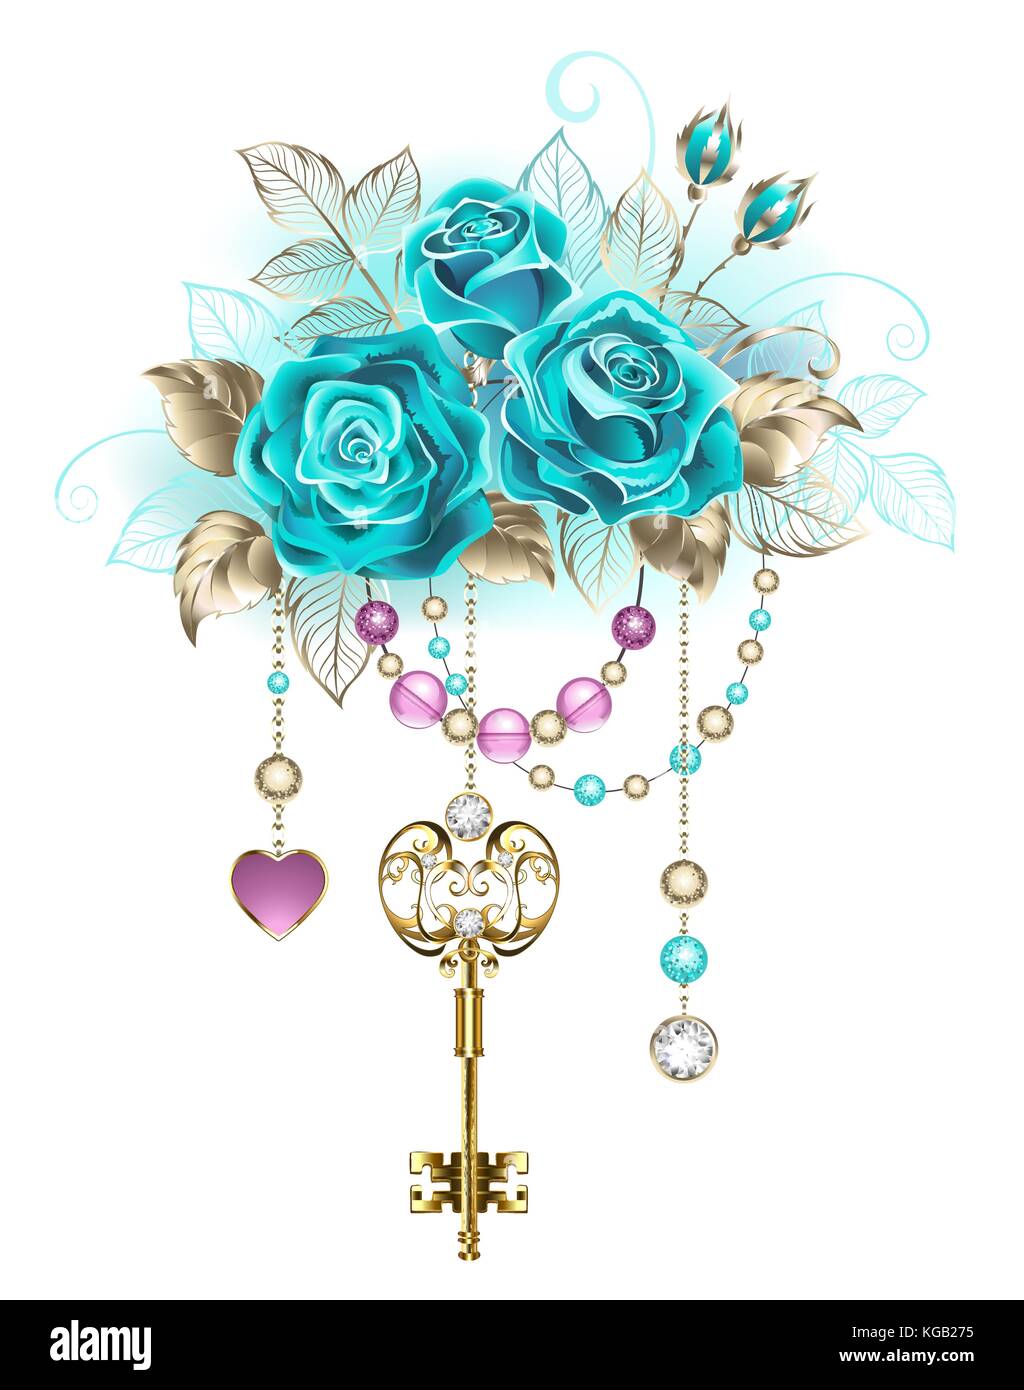 Oro antico con chiave trendy rose turchese decorato con foglie di oro bianco e rosa e perline blu. alla moda. colore turchese rose. bianco vai Illustrazione Vettoriale